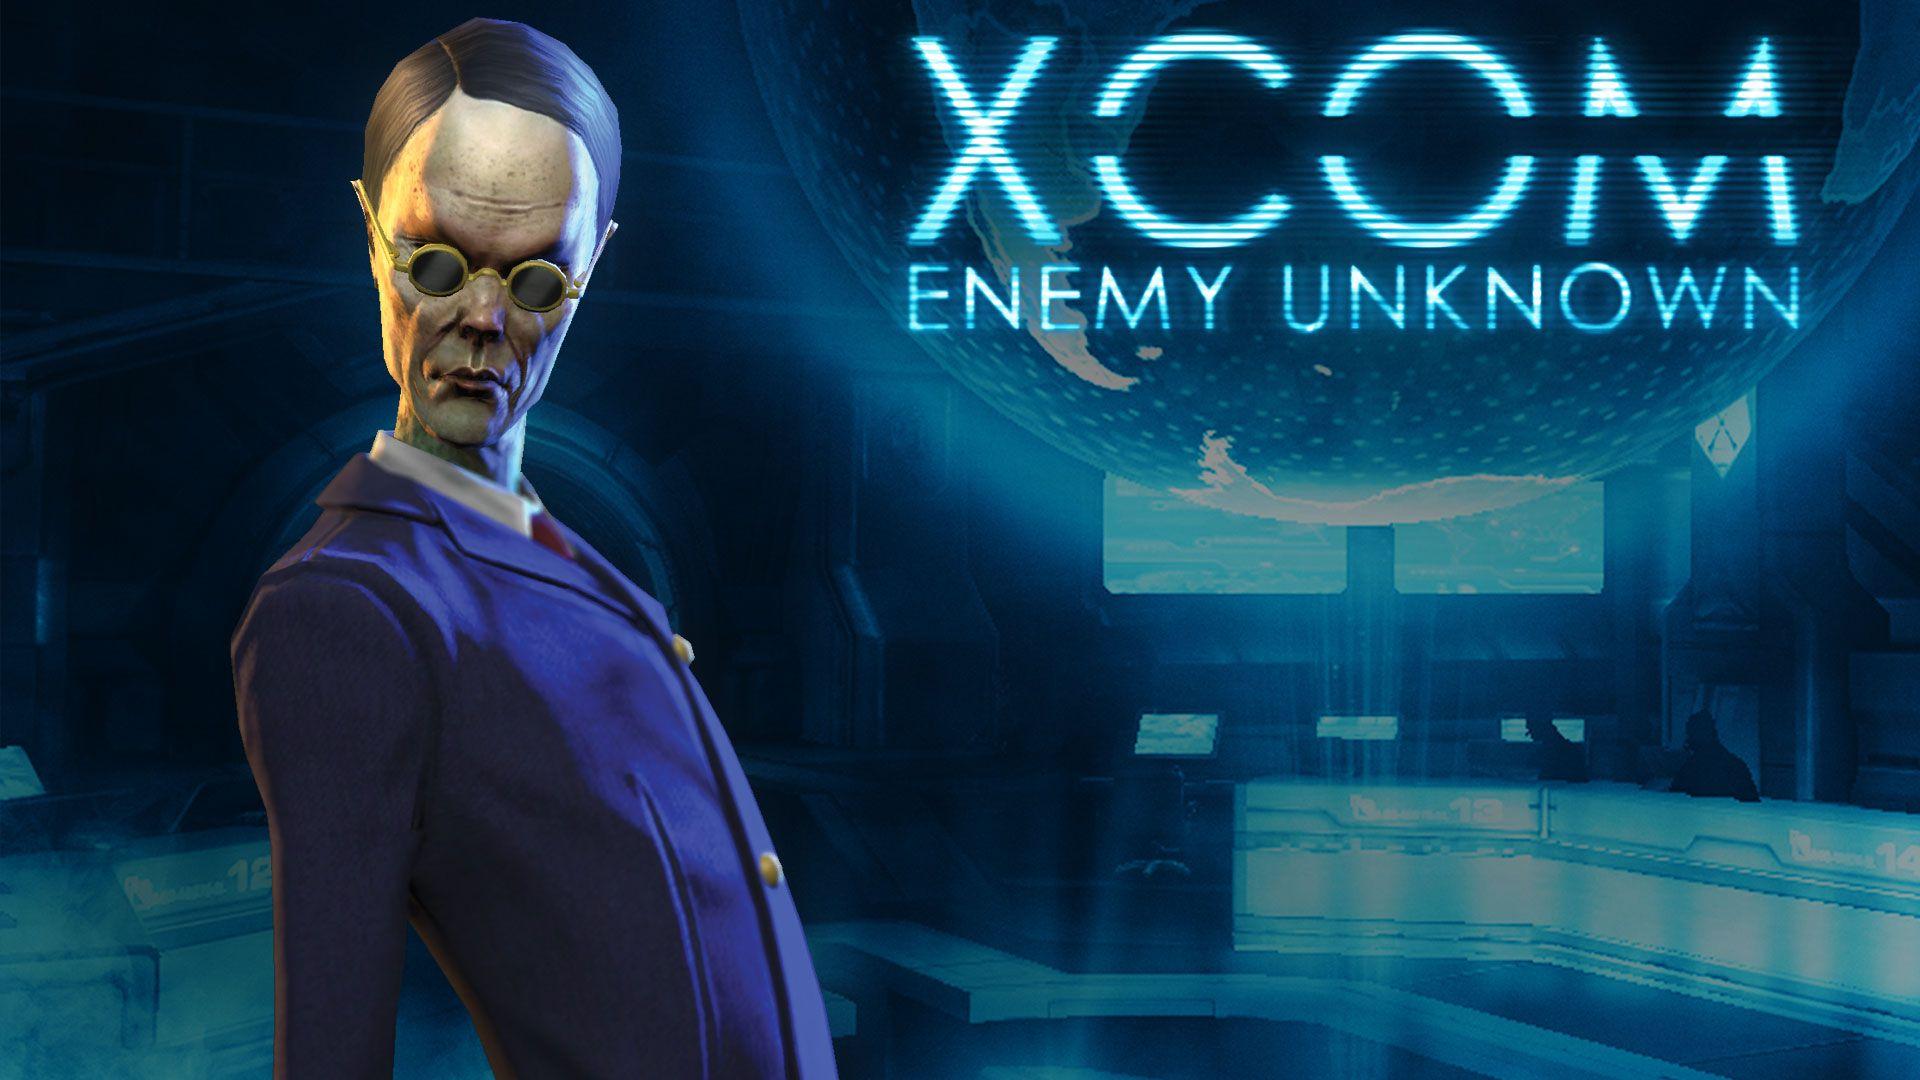 XCOM Enemy Unknown Steam Card 4 9 Man. X COM